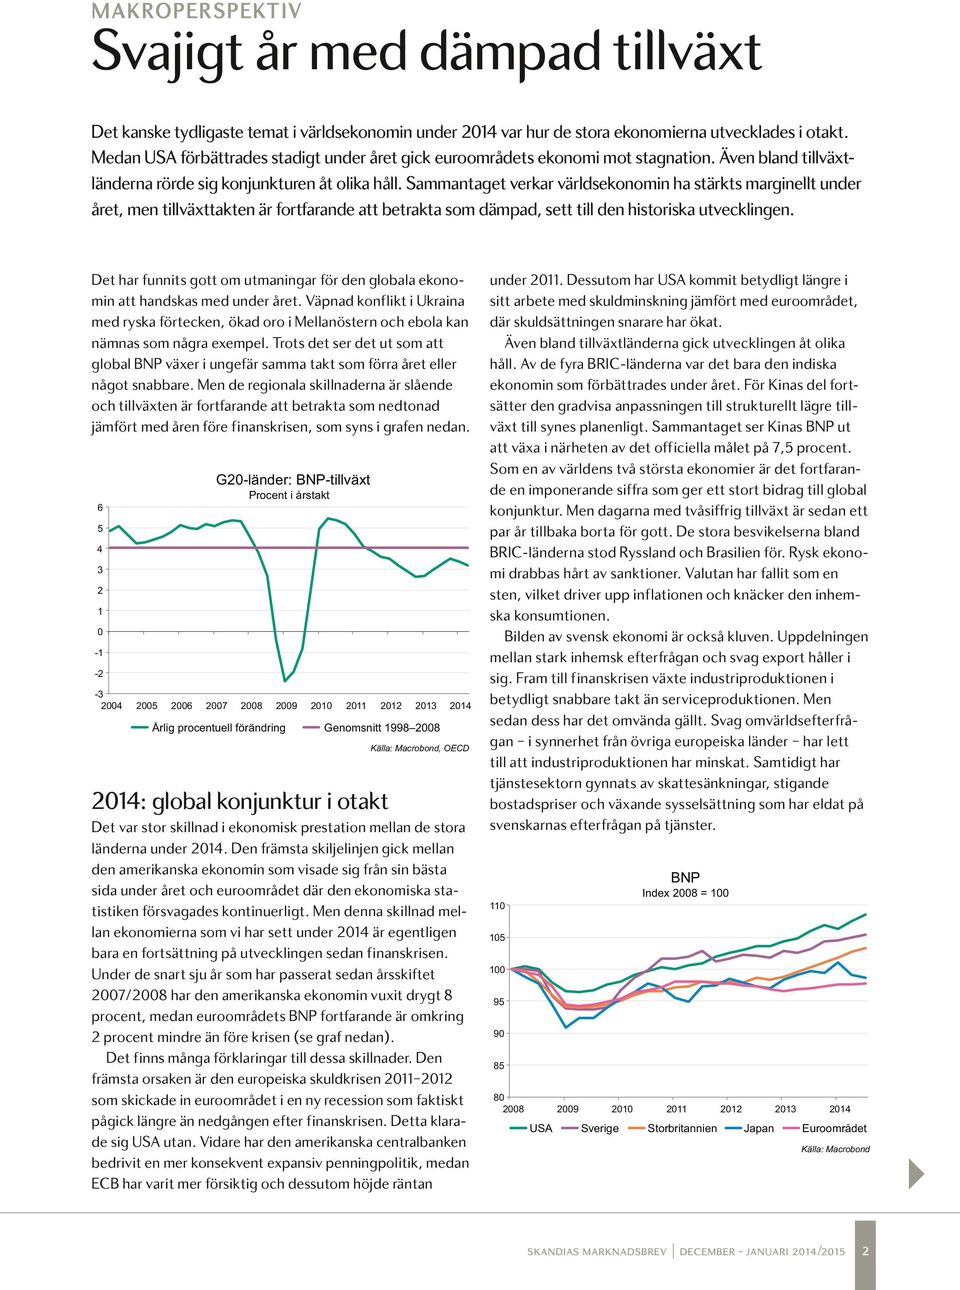 Sammantaget verkar världsekonomin ha stärkts marginellt under året, men tillväxttakten är fortfarande att betrakta som dämpad, sett till den historiska utvecklingen.